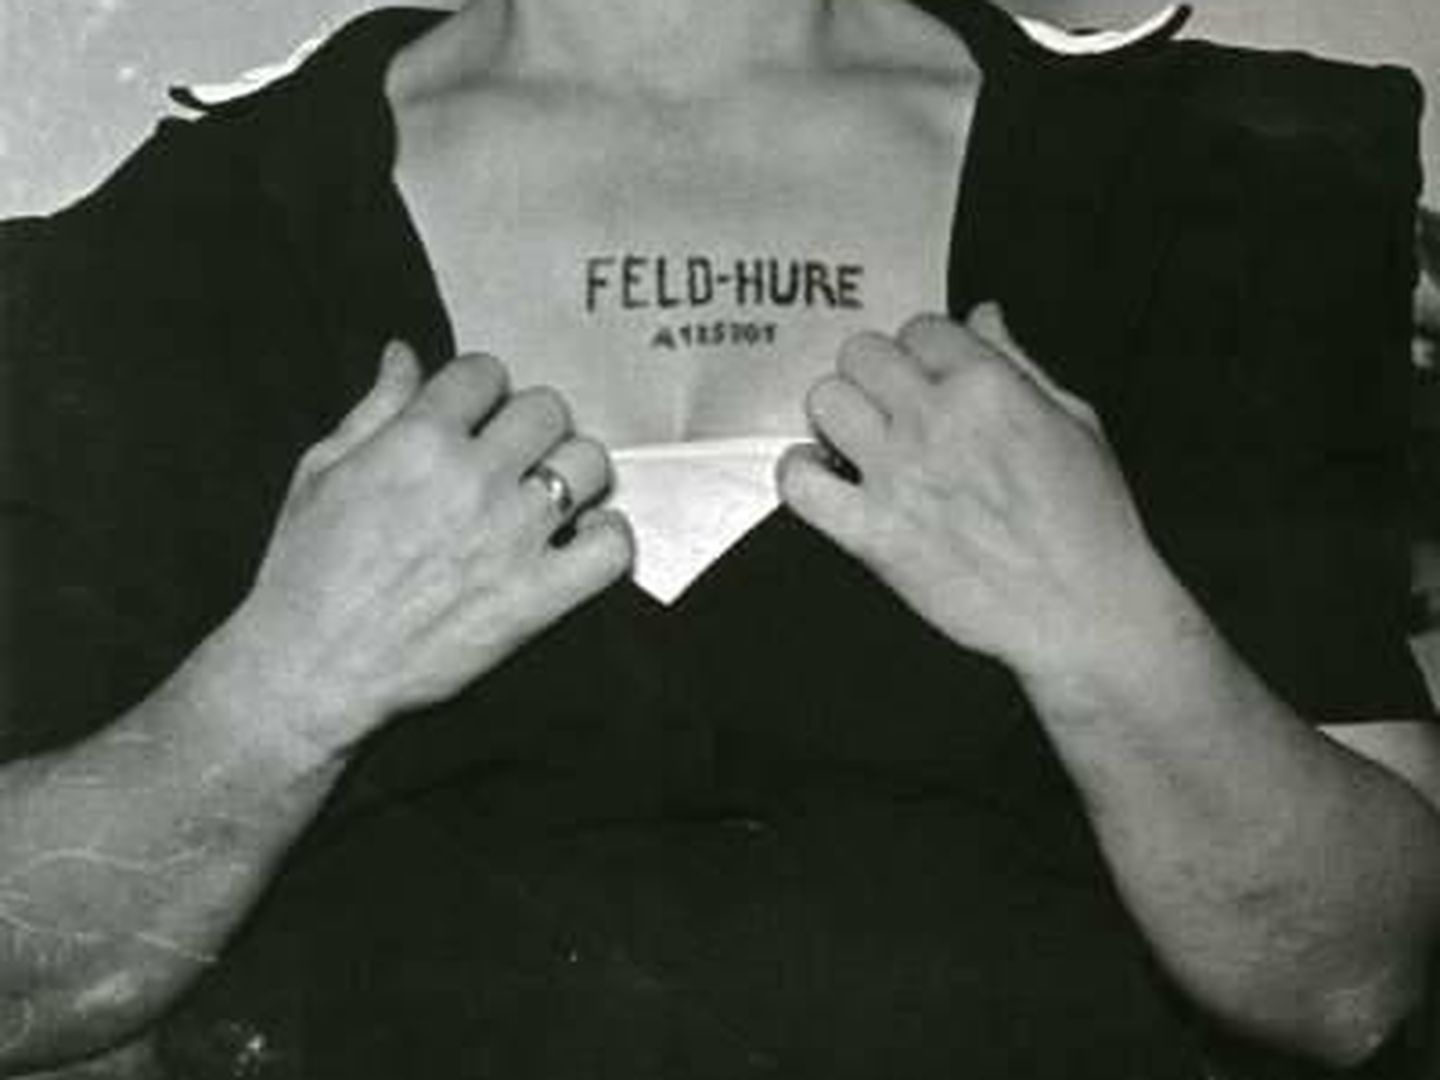 Fotografía de una supuesta superviviente de Auschwitz con el tatuaje 'Feld-Hure' (Puta del campo) en el pecho. (Paul Goldman)